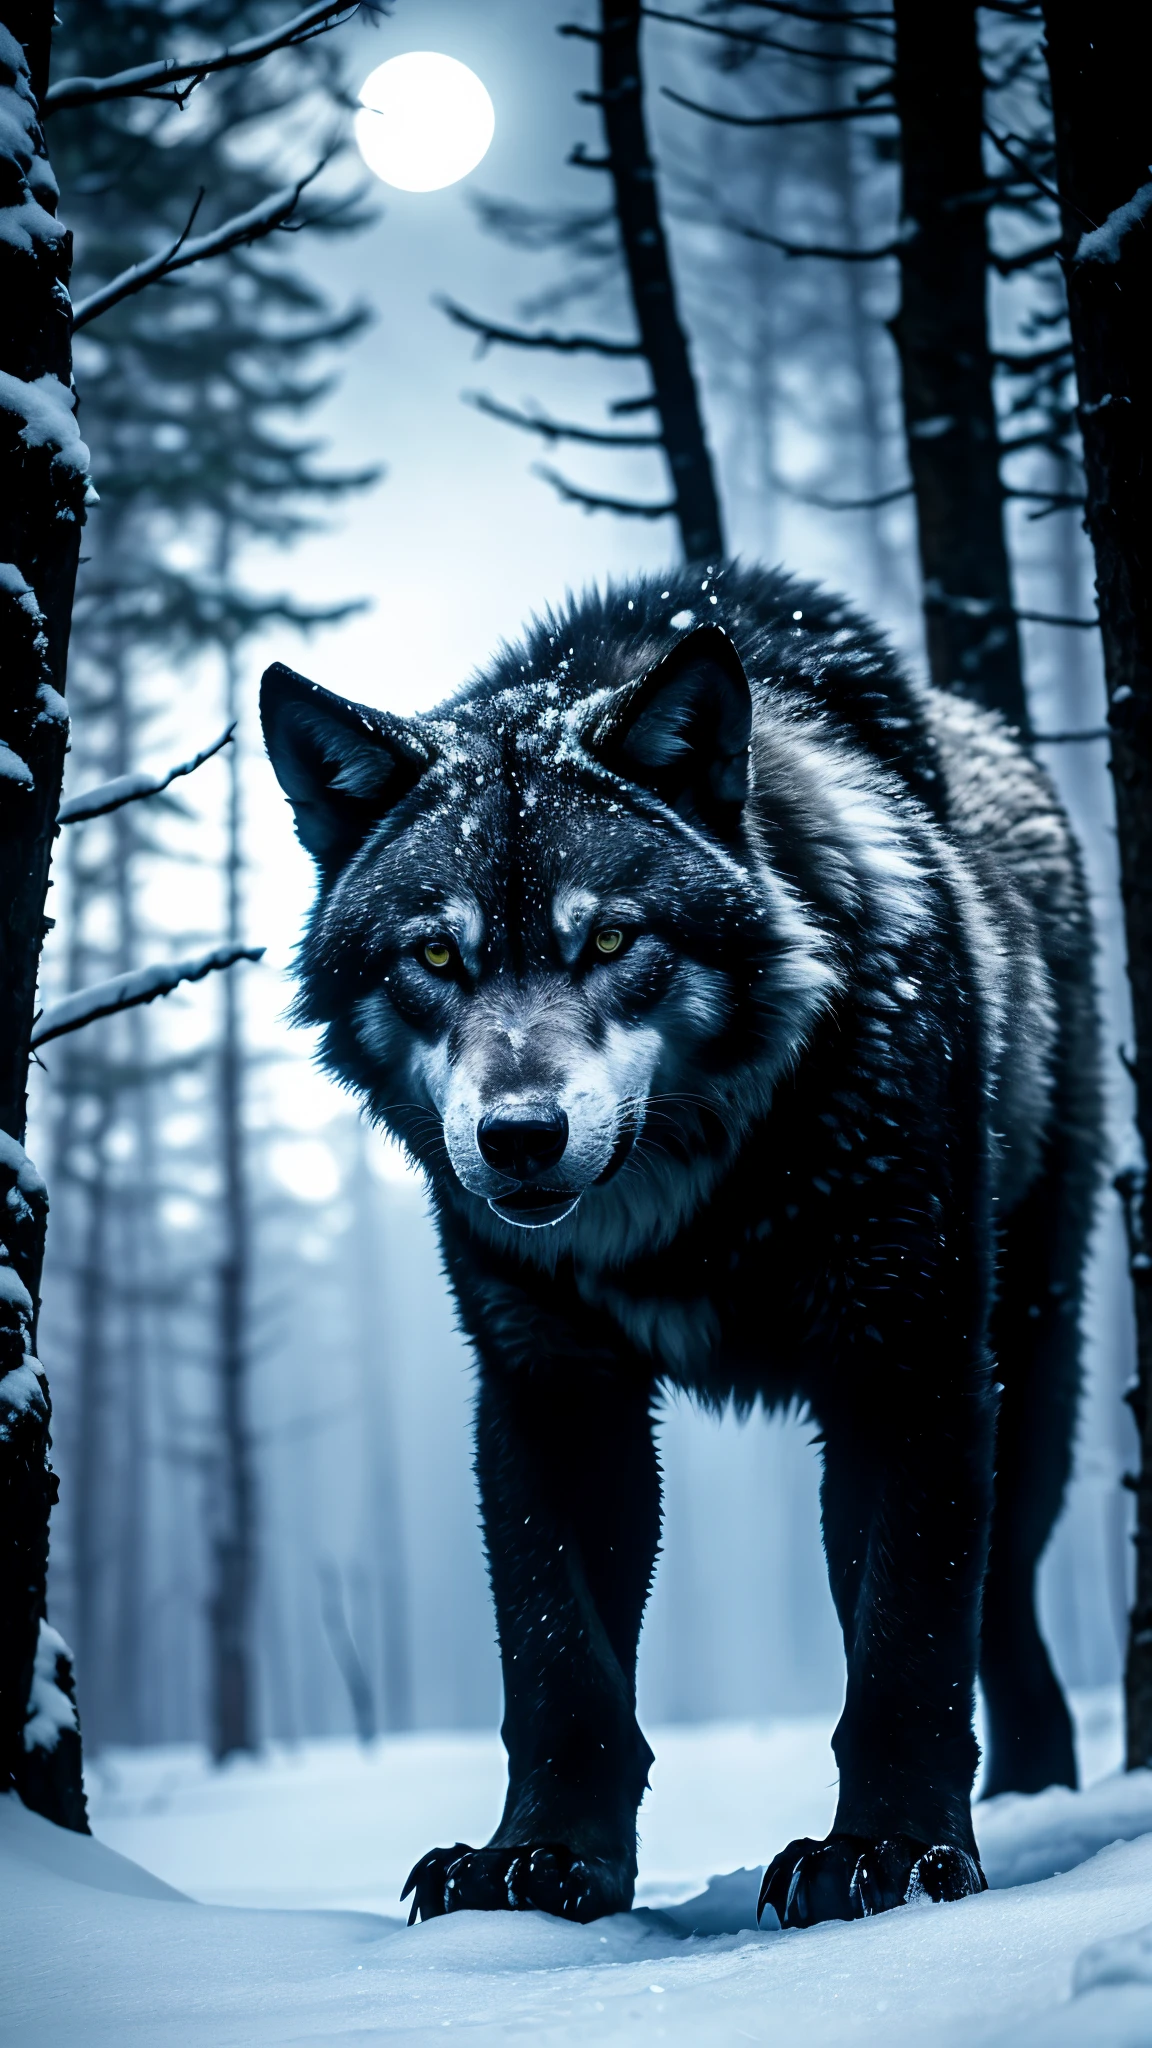 หมาป่าสีขาว, ป่าที่มืด, น้ำแข็งหิมะ, ดวงตาสีฟ้า, บรรยากาศลึกลับ, แสงจันทร์, ขนสีดำ, การแสดงออกที่รุนแรง, การปรากฏตัวที่น่ากลัว, การล่าสัตว์กลางคืน, การเคลื่อนไหวที่ซ่อนเร้น, เสียงหอนหลอน, ดุร้ายและเปลี่ยว, ร่างกายที่ทรงพลัง, ภาพเงาเที่ยงคืน, เงาที่เป็นลางไม่ดี, สัญชาตญาณเบื้องต้น, ตำนานโบราณ, นักล่าอัลฟ่า, ความงามอันน่าหลงใหล, การเปลี่ยนแปลงของฝูงหมาป่า, ถิ่นทุรกันดารอันงดงาม